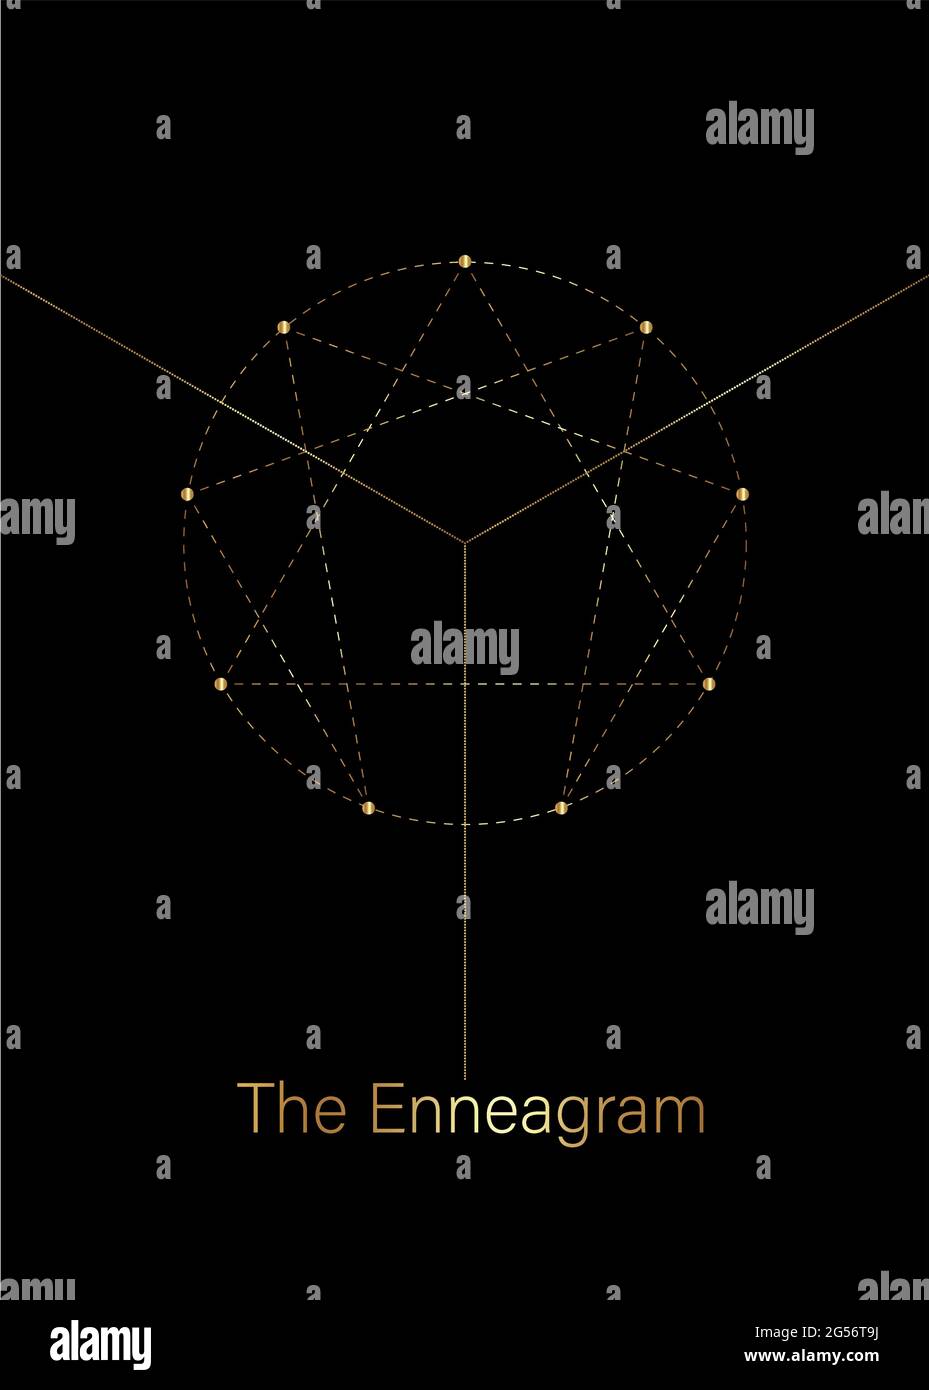 Icône Enneagram, géométrie sacrée de luxe doré, modèle de logo de diagramme, un à neuf concernant les neuf types de personnalité, style en pointillés dorés Illustration de Vecteur